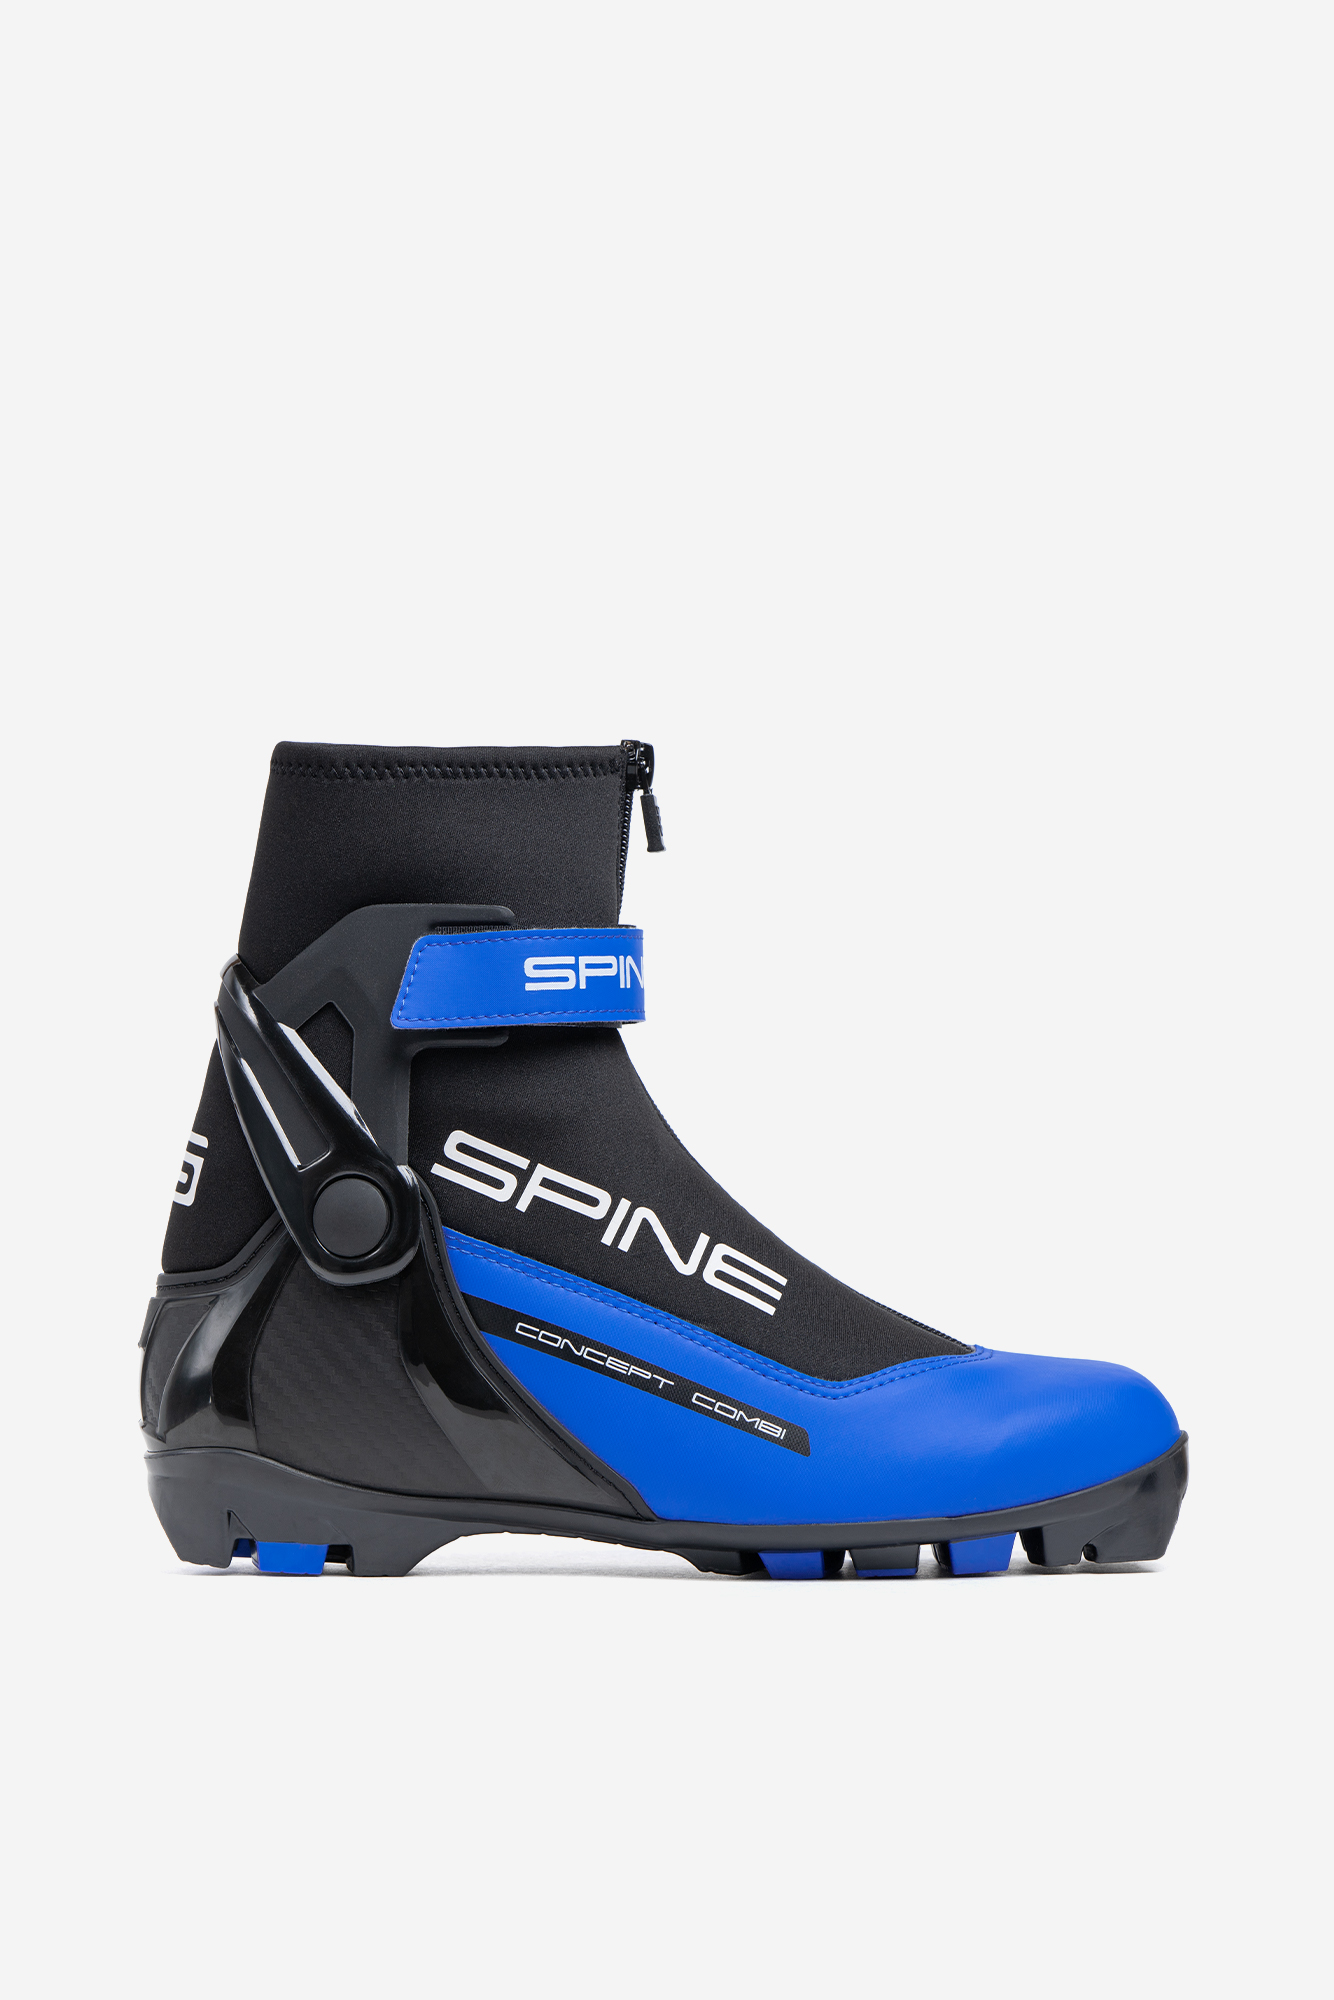 Купить Лыжные ботинки Spine NNN Concept Combi (268/1-22) (синий),